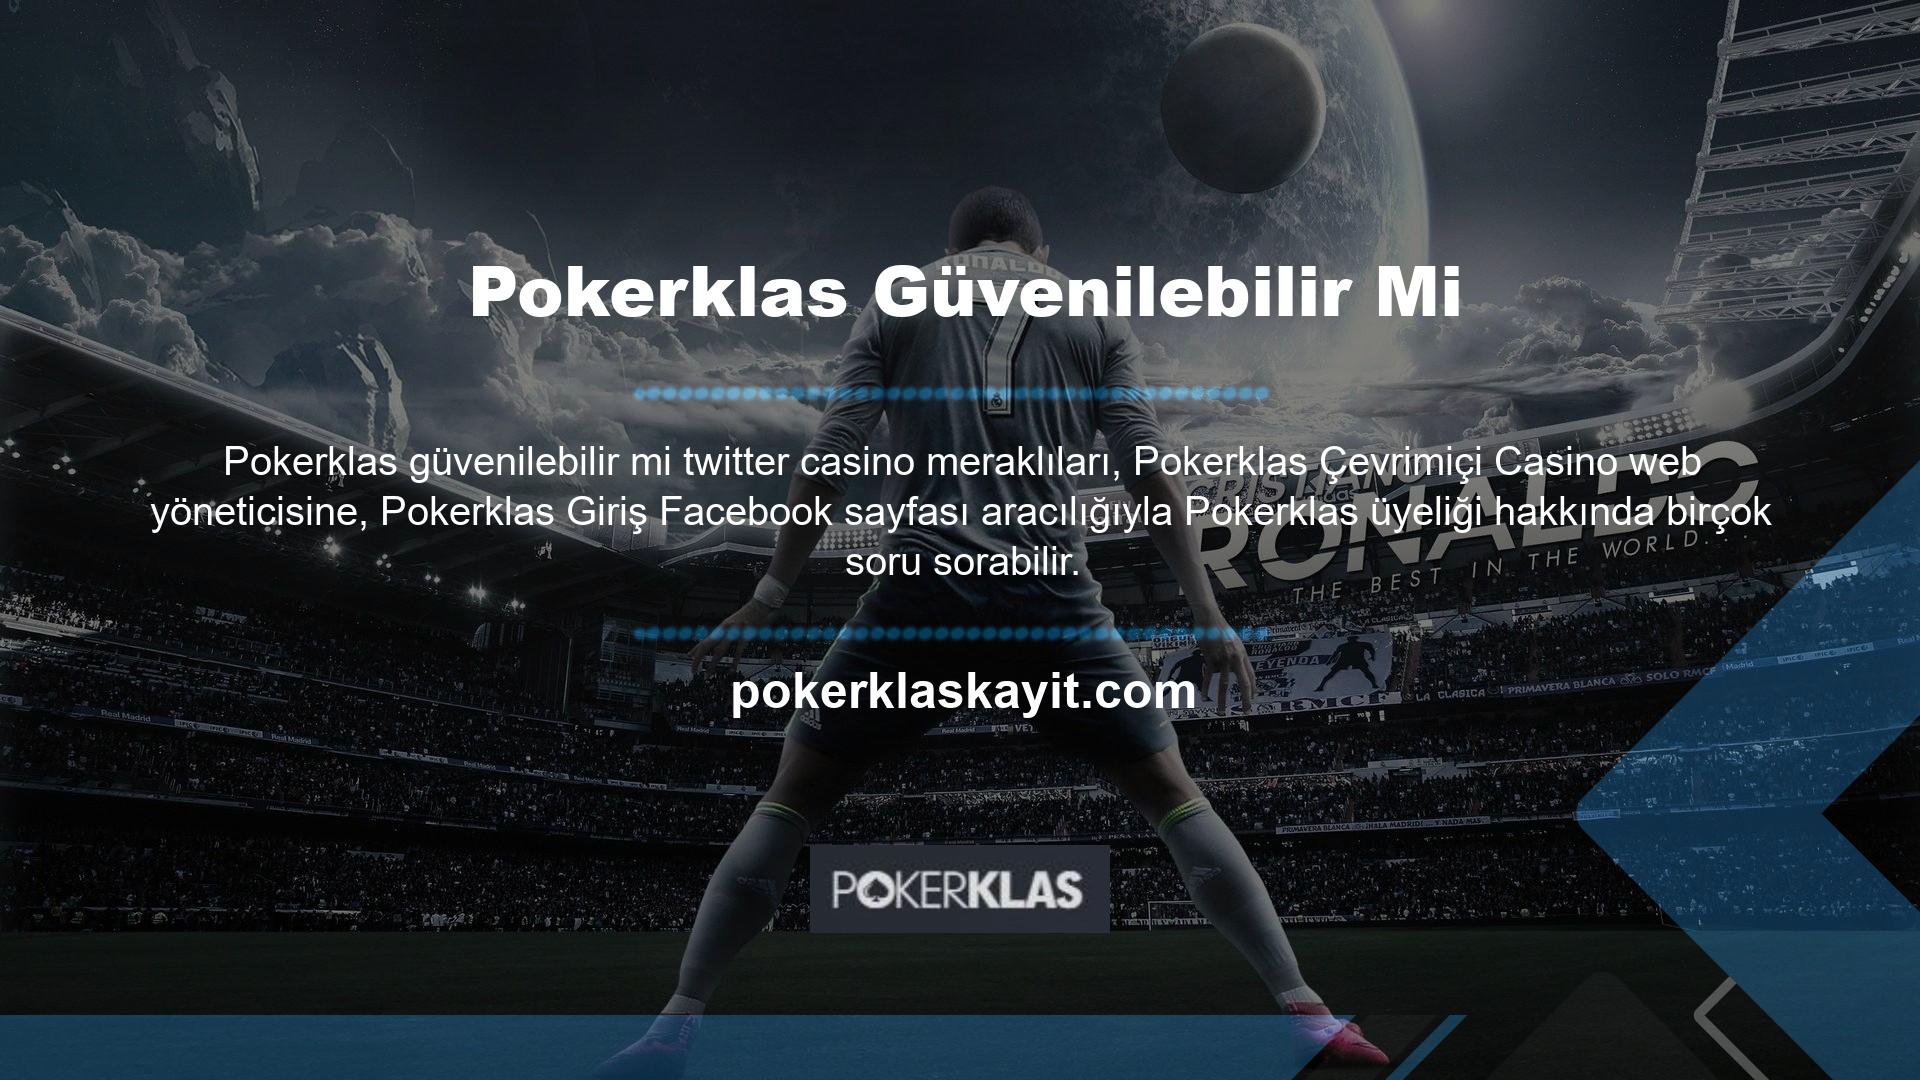 Pokerklas online casino sitesine üye olmak için bir oyuncunun yapması gereken ilk şey, sitenin mevcut adresinden ana sayfaya erişmektir